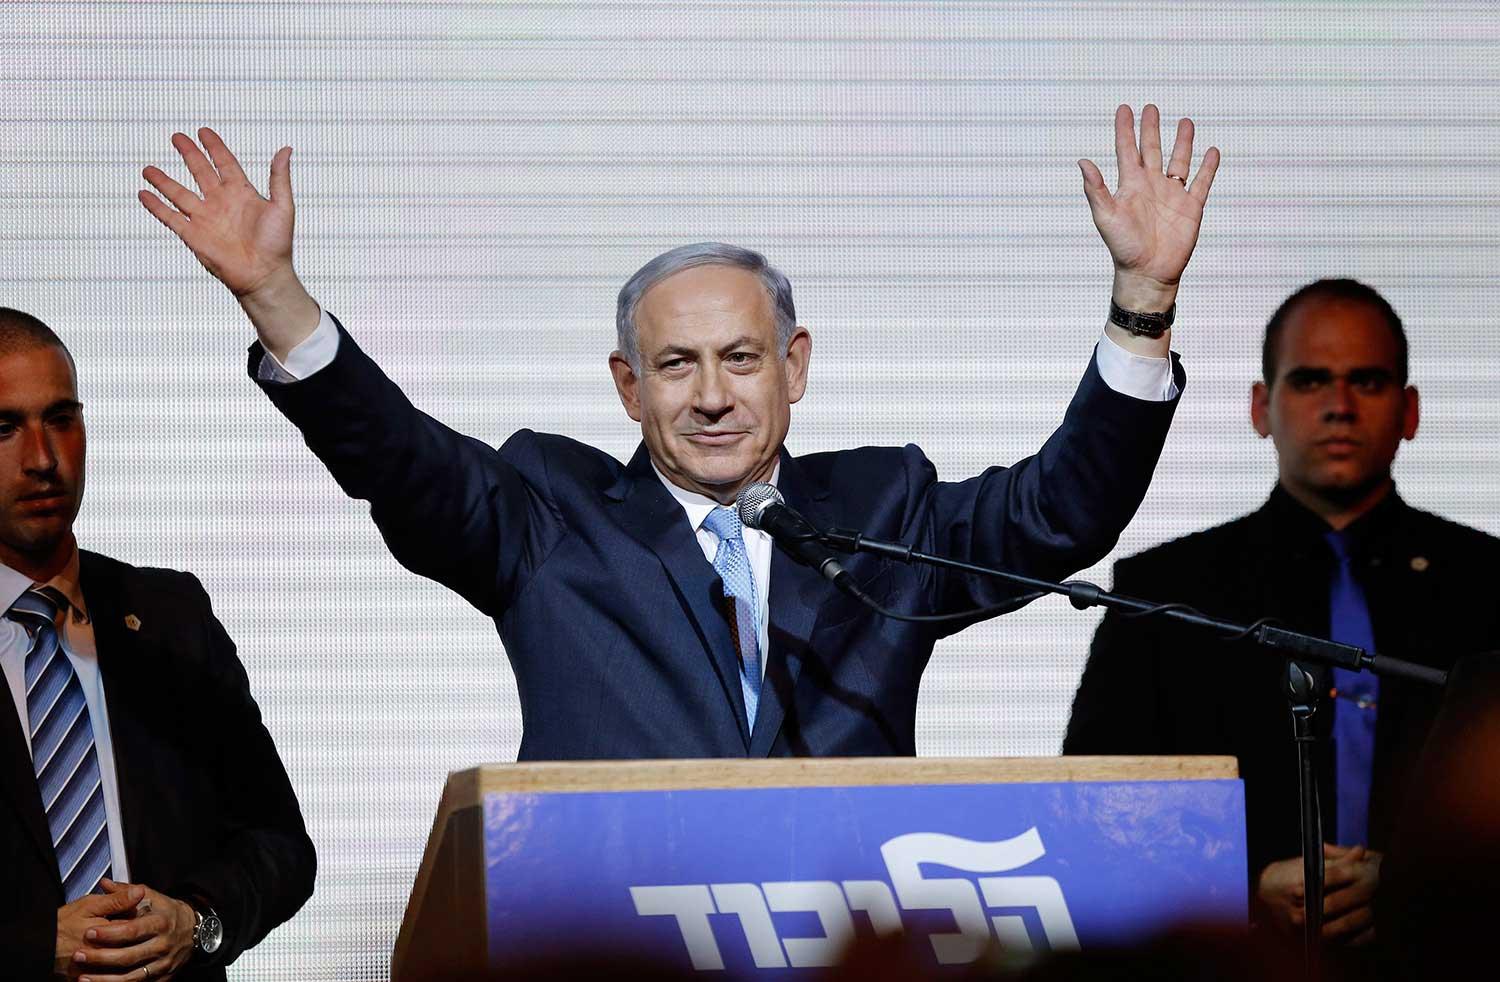 Benjamin Netanyahu och hans högerparti Likud gjorde ett rekordval. Deras resa från valförlust till storseger saknar motstycke. Med honom vid rodret blir drömmen om en tvåstatslösning mellan Israel och Palestina allt mer osannolik.